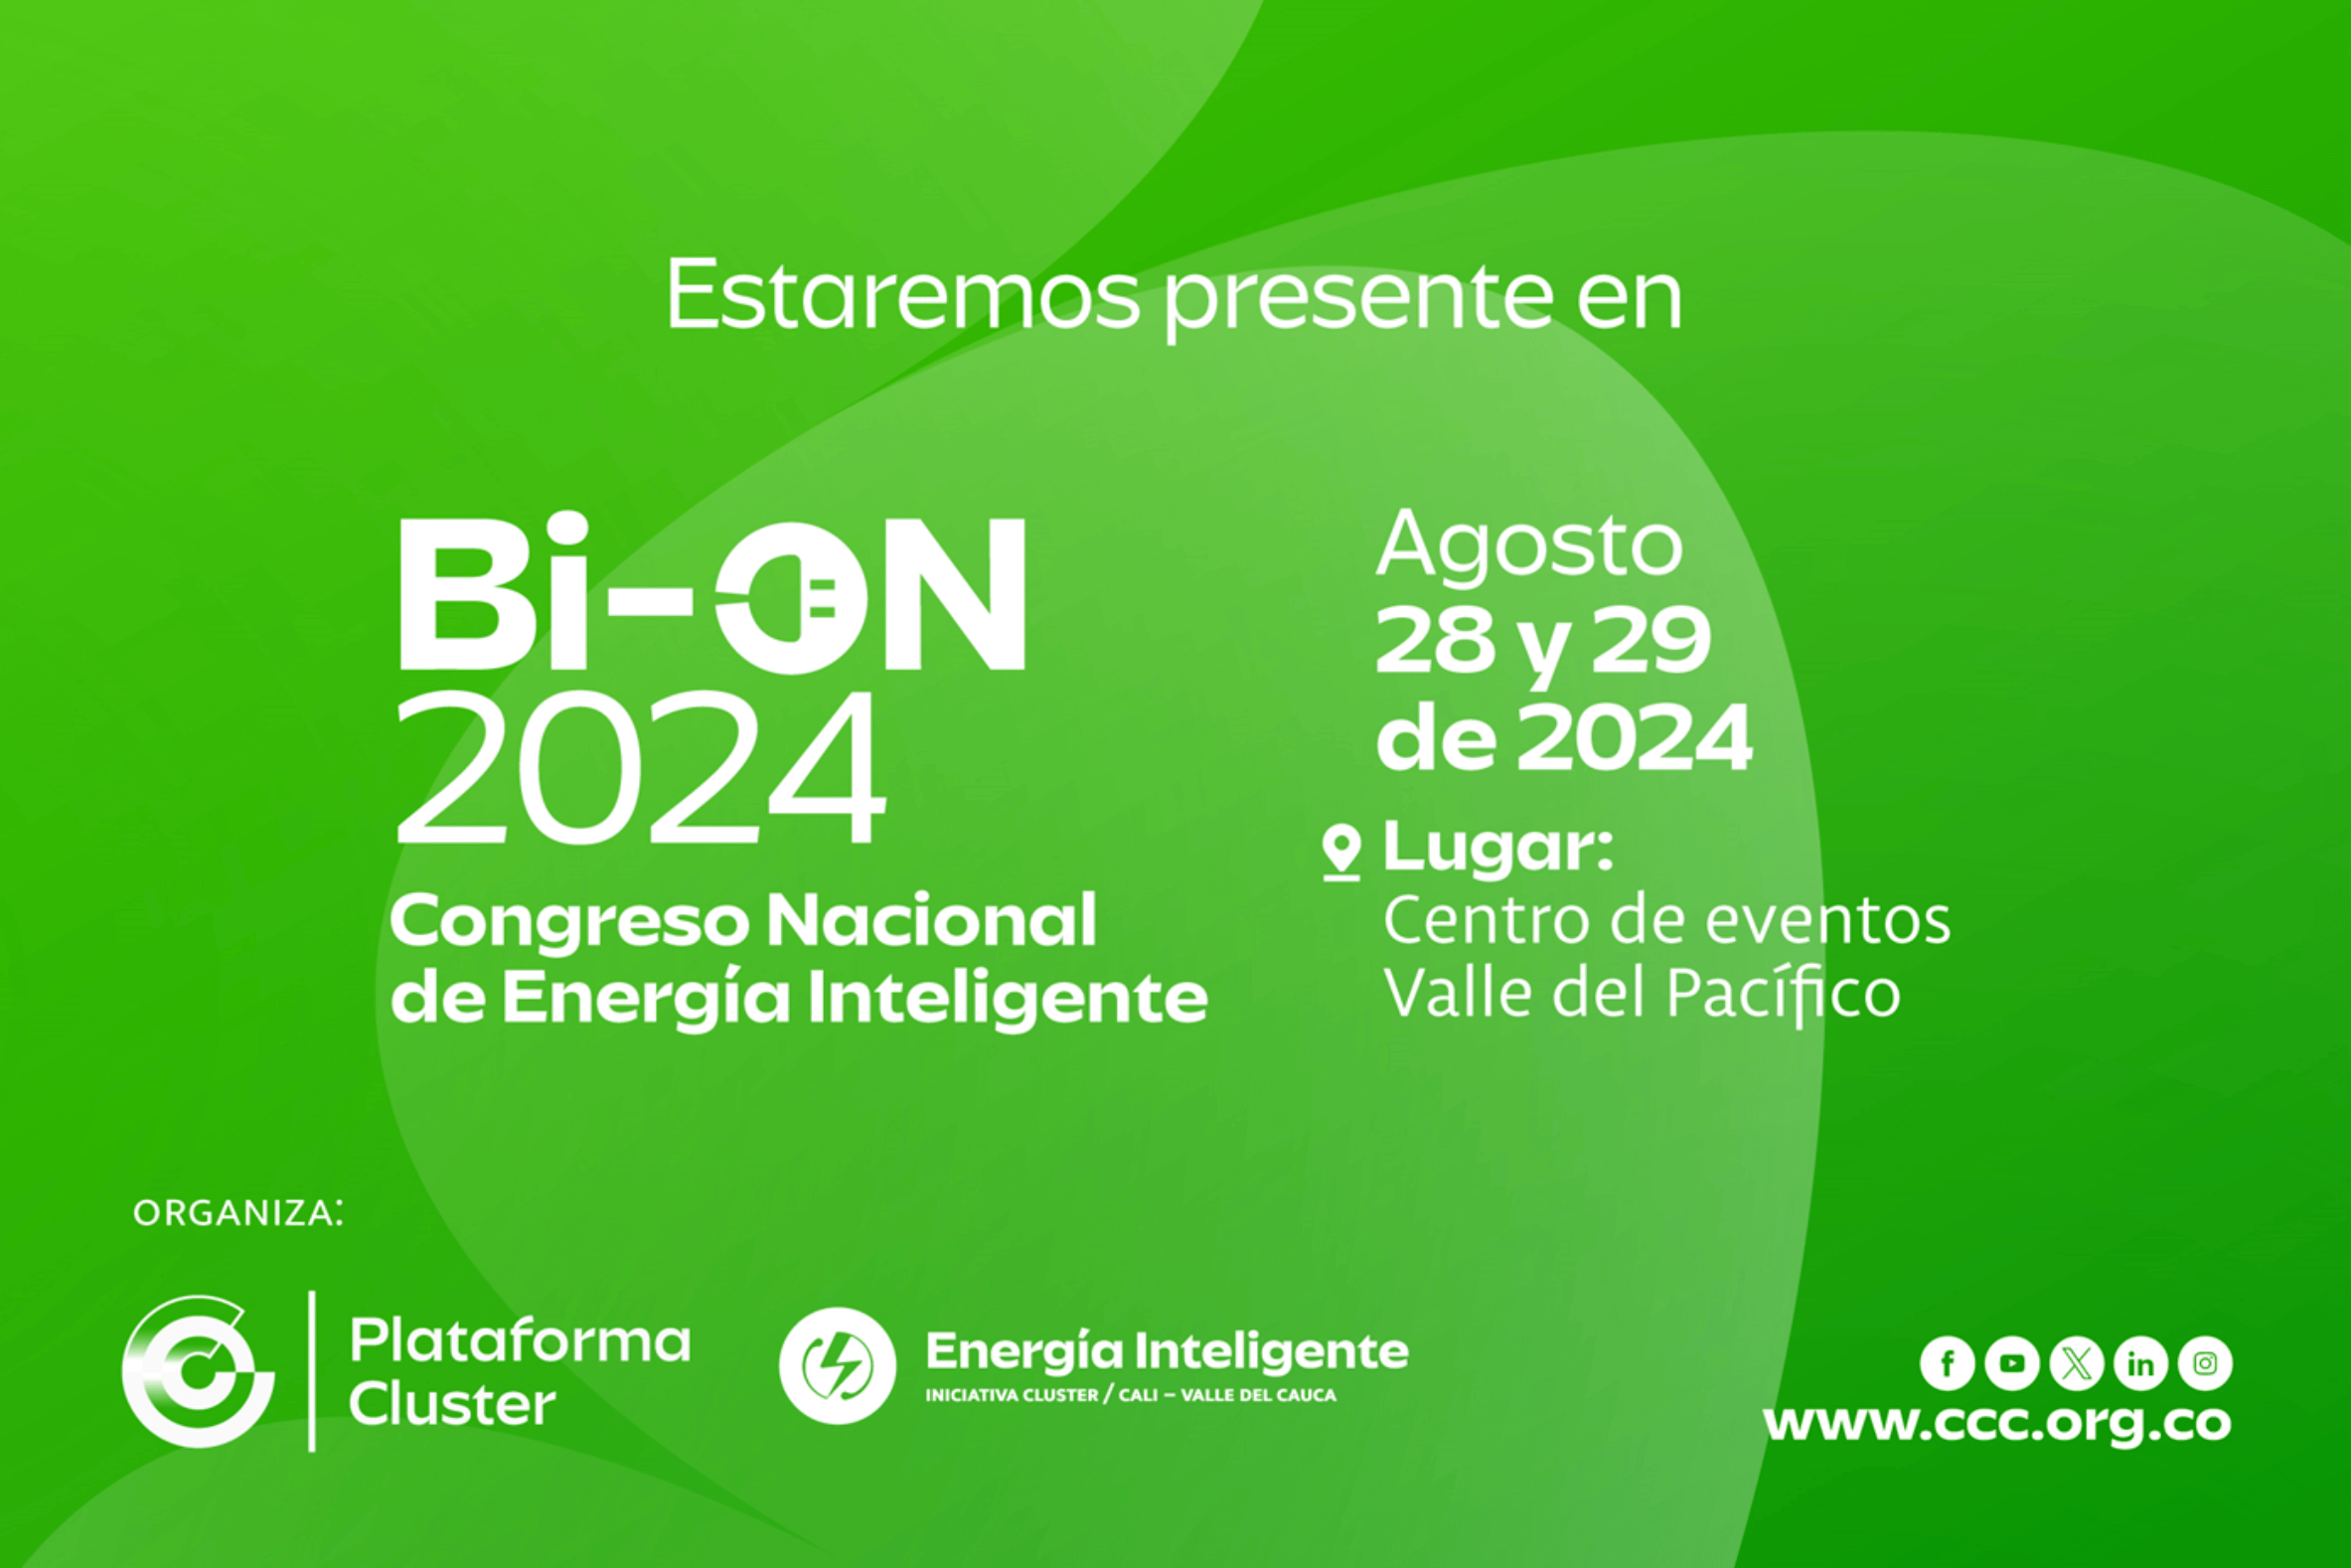 Bi-ON 2024 Congreso Nacional de Energía Inteligente